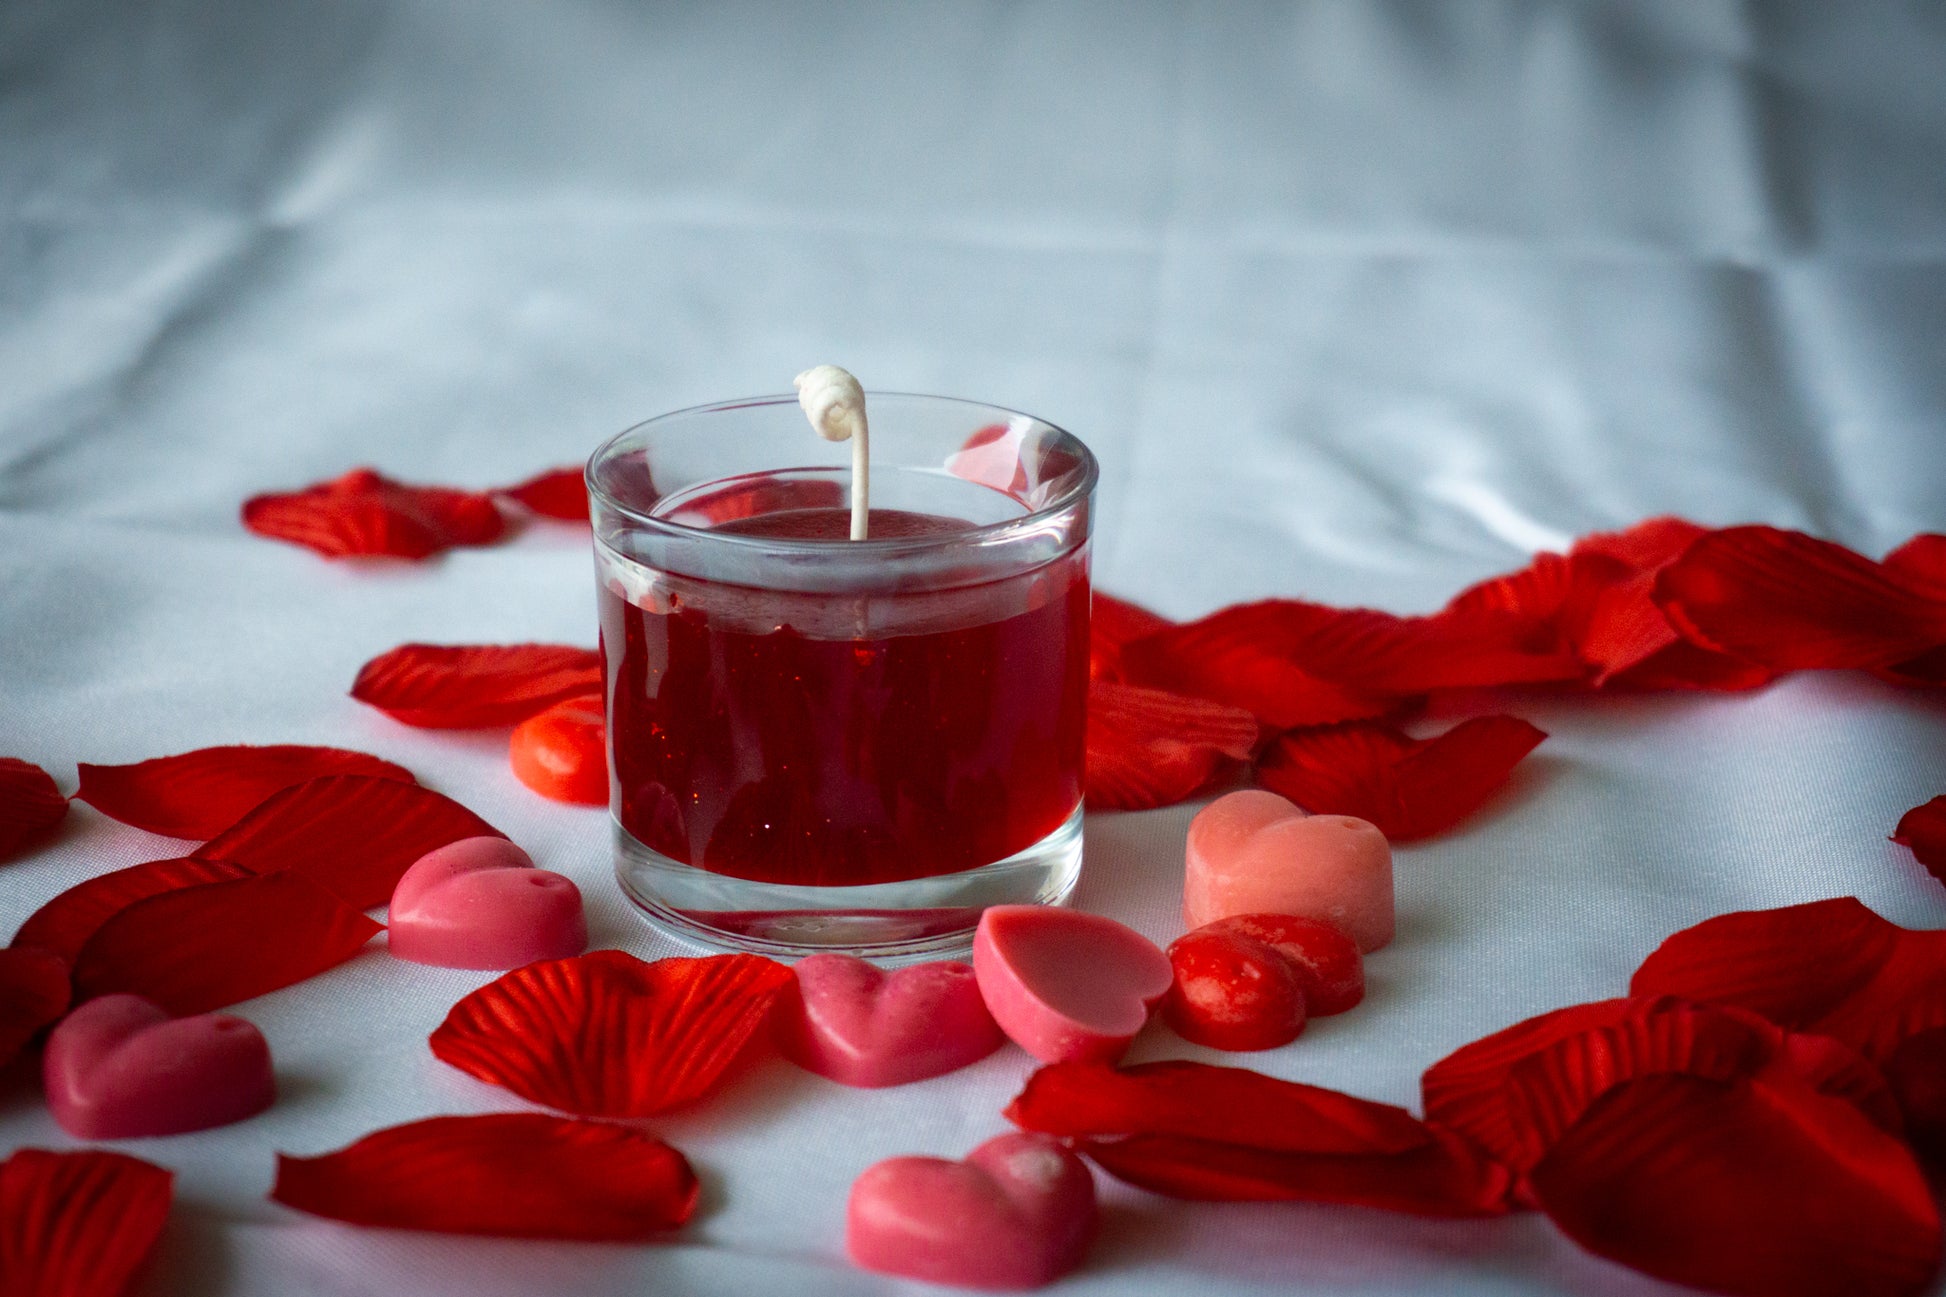 Les bougies pour l'amour : un objet utile pour séduire - WeMystic France